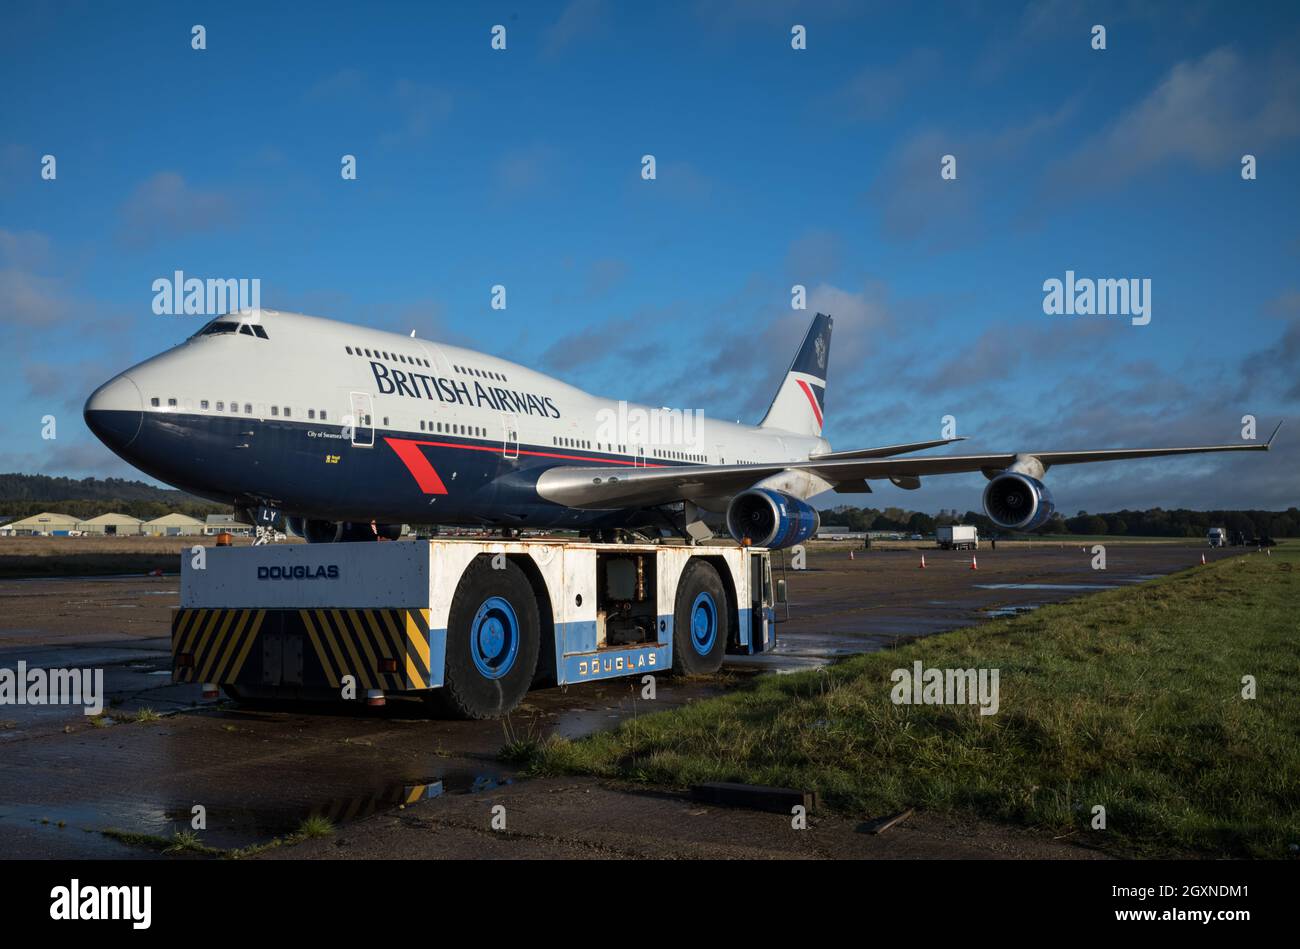 Smantellamento della British Airways Boeing 747 G-BNLY parcheggiato a Dunsfold Aerodrome, Surrey, Regno Unito Foto Stock